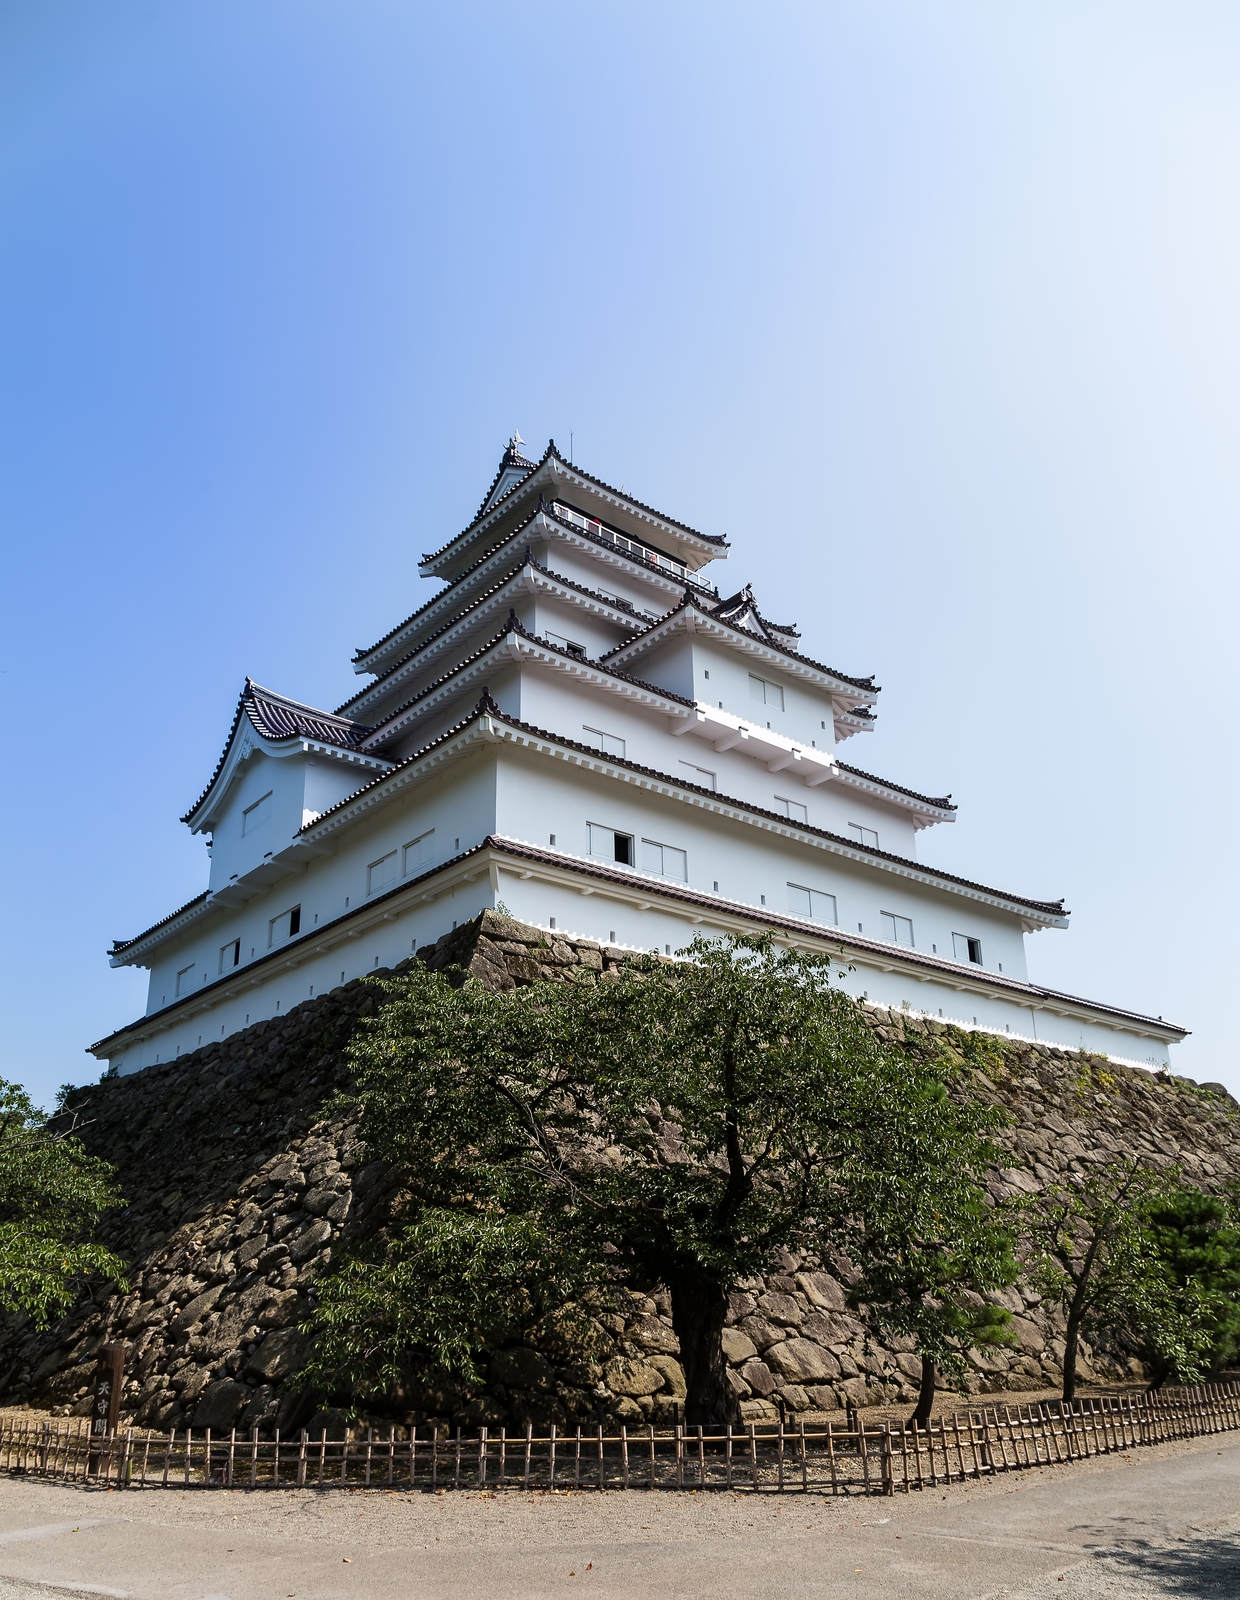 明日6月17日(月)の名古屋城のお知らせでござるよー